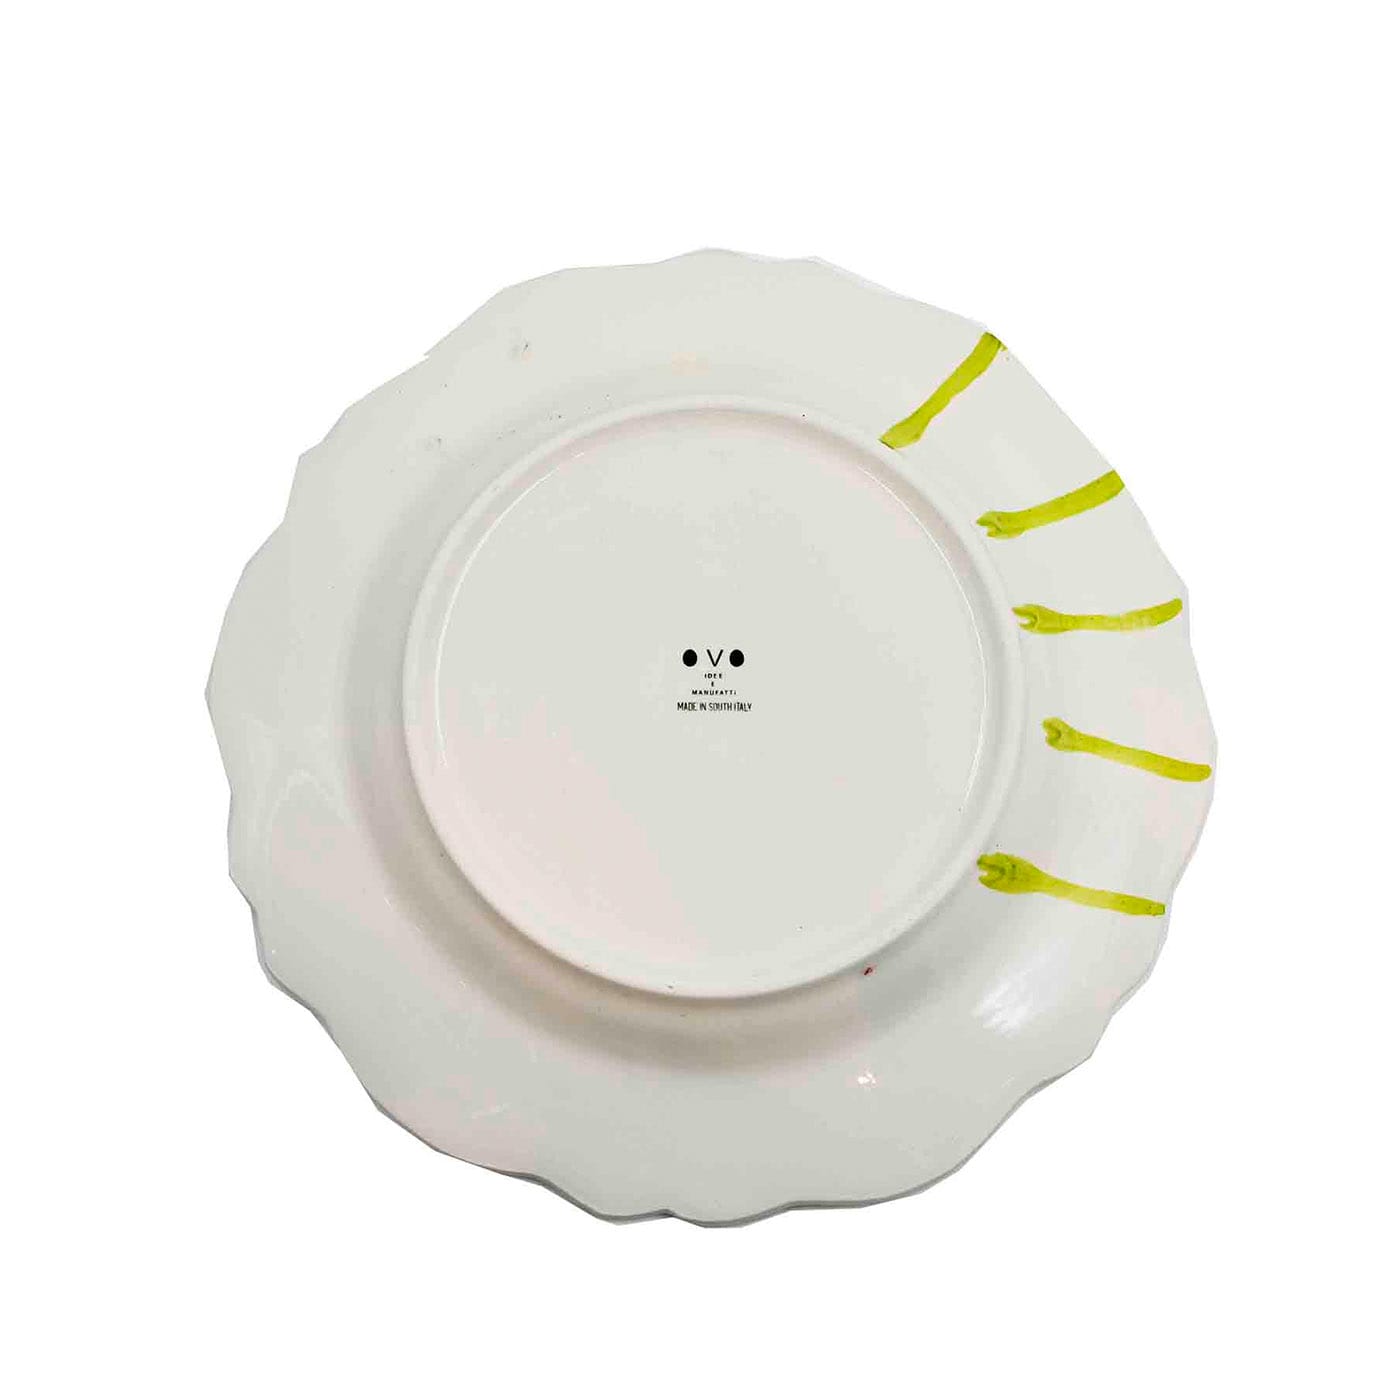 Premium Italian Handpainted Ceramic Plate